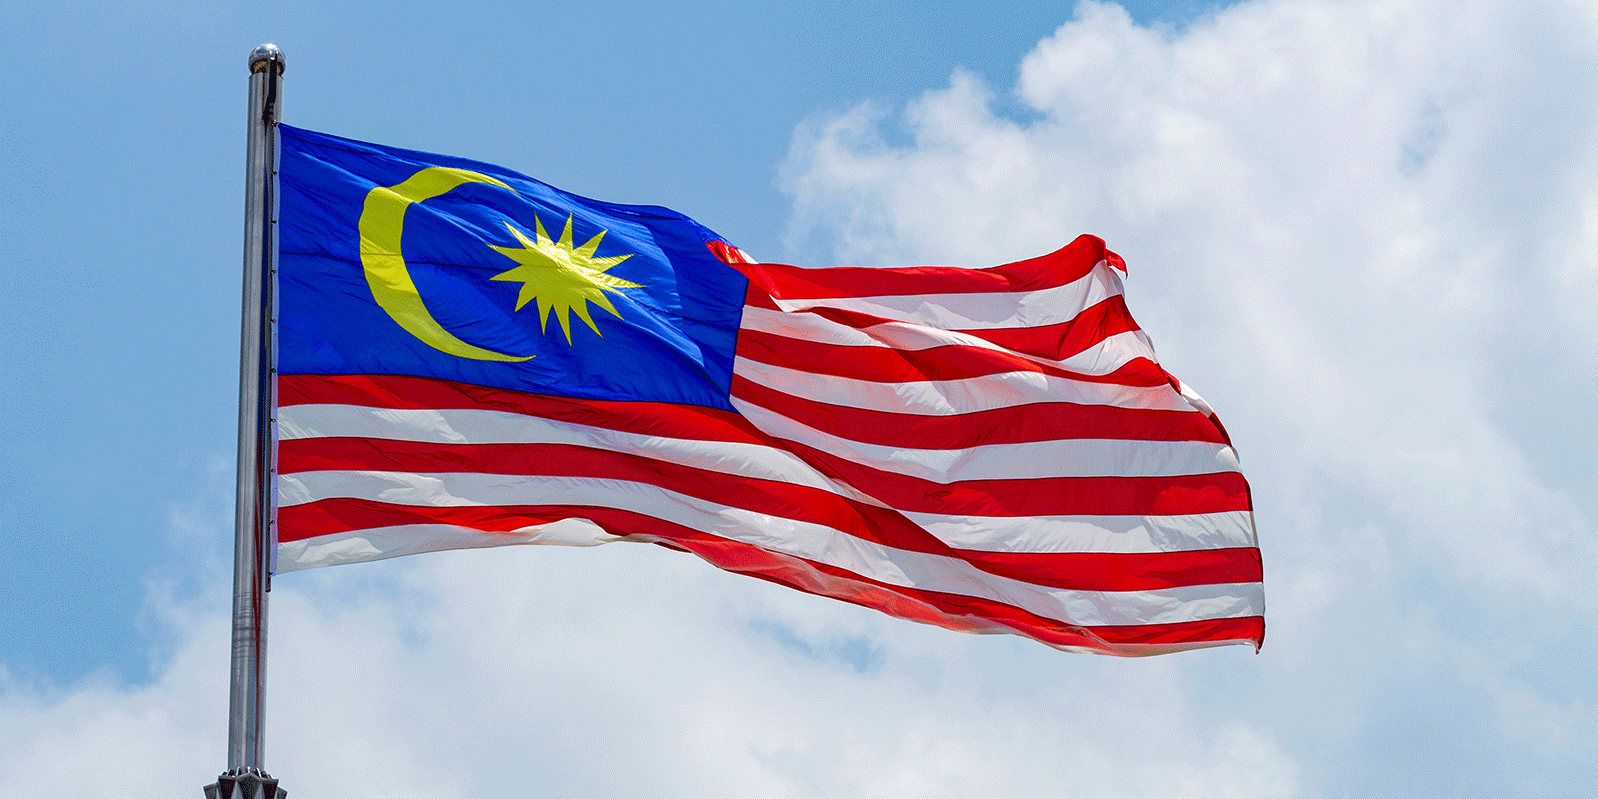 Malaisie : TotalEnergies s’associe à Petronas et Mitsui pour créer un pôle de stockage de CO2